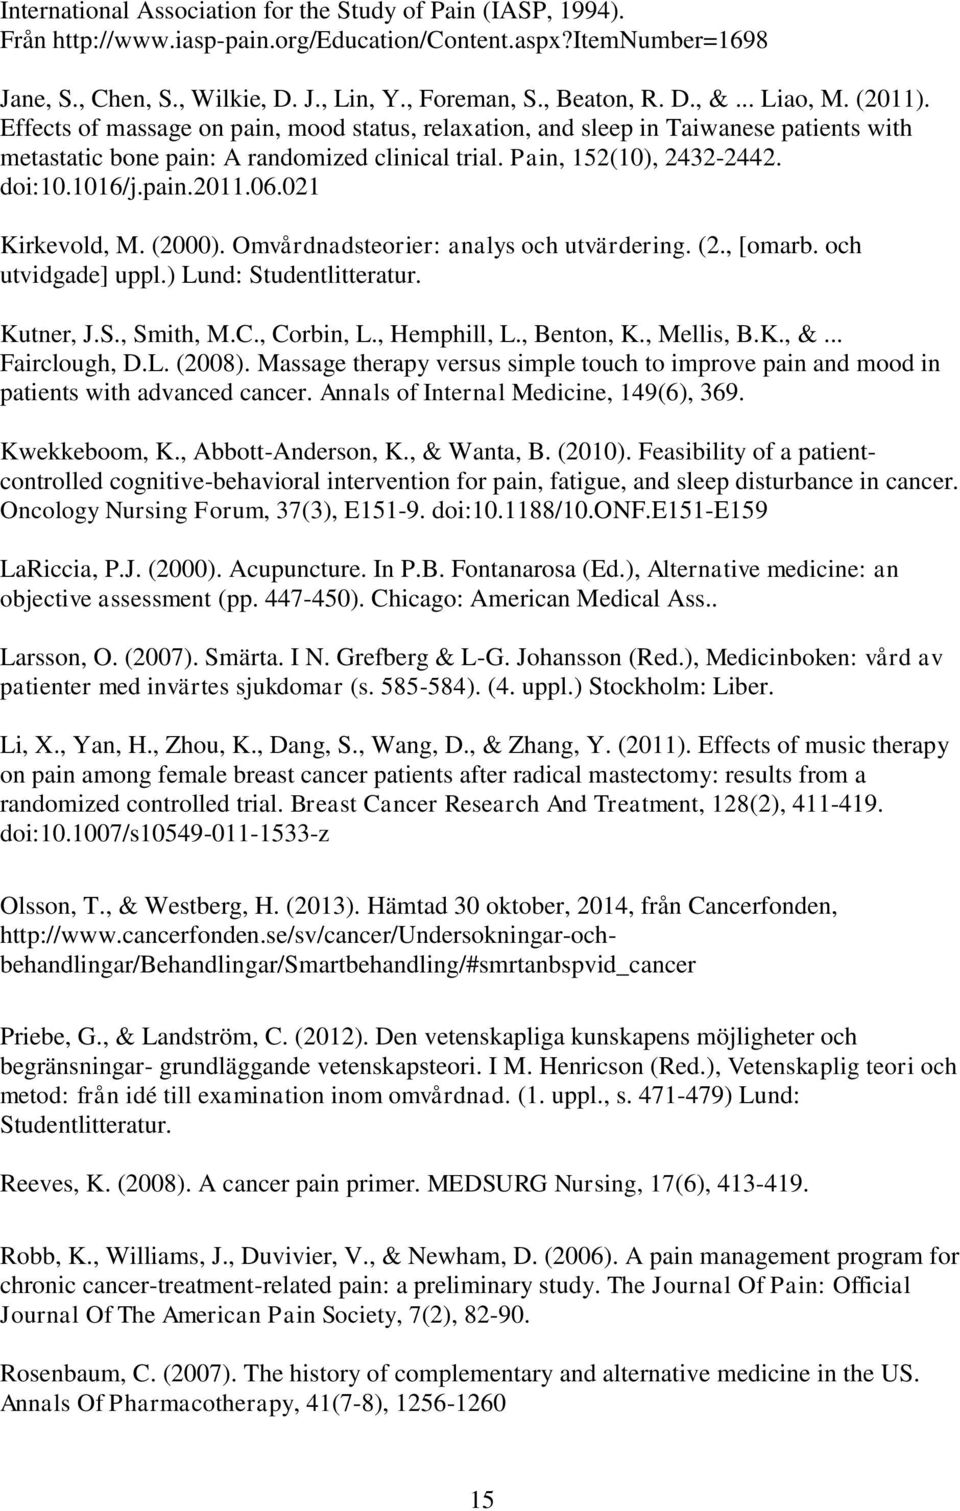 1016/j.pain.2011.06.021 Kirkevold, M. (2000). Omvårdnadsteorier: analys och utvärdering. (2., [omarb. och utvidgade] uppl.) Lund: Studentlitteratur. Kutner, J.S., Smith, M.C., Corbin, L., Hemphill, L.